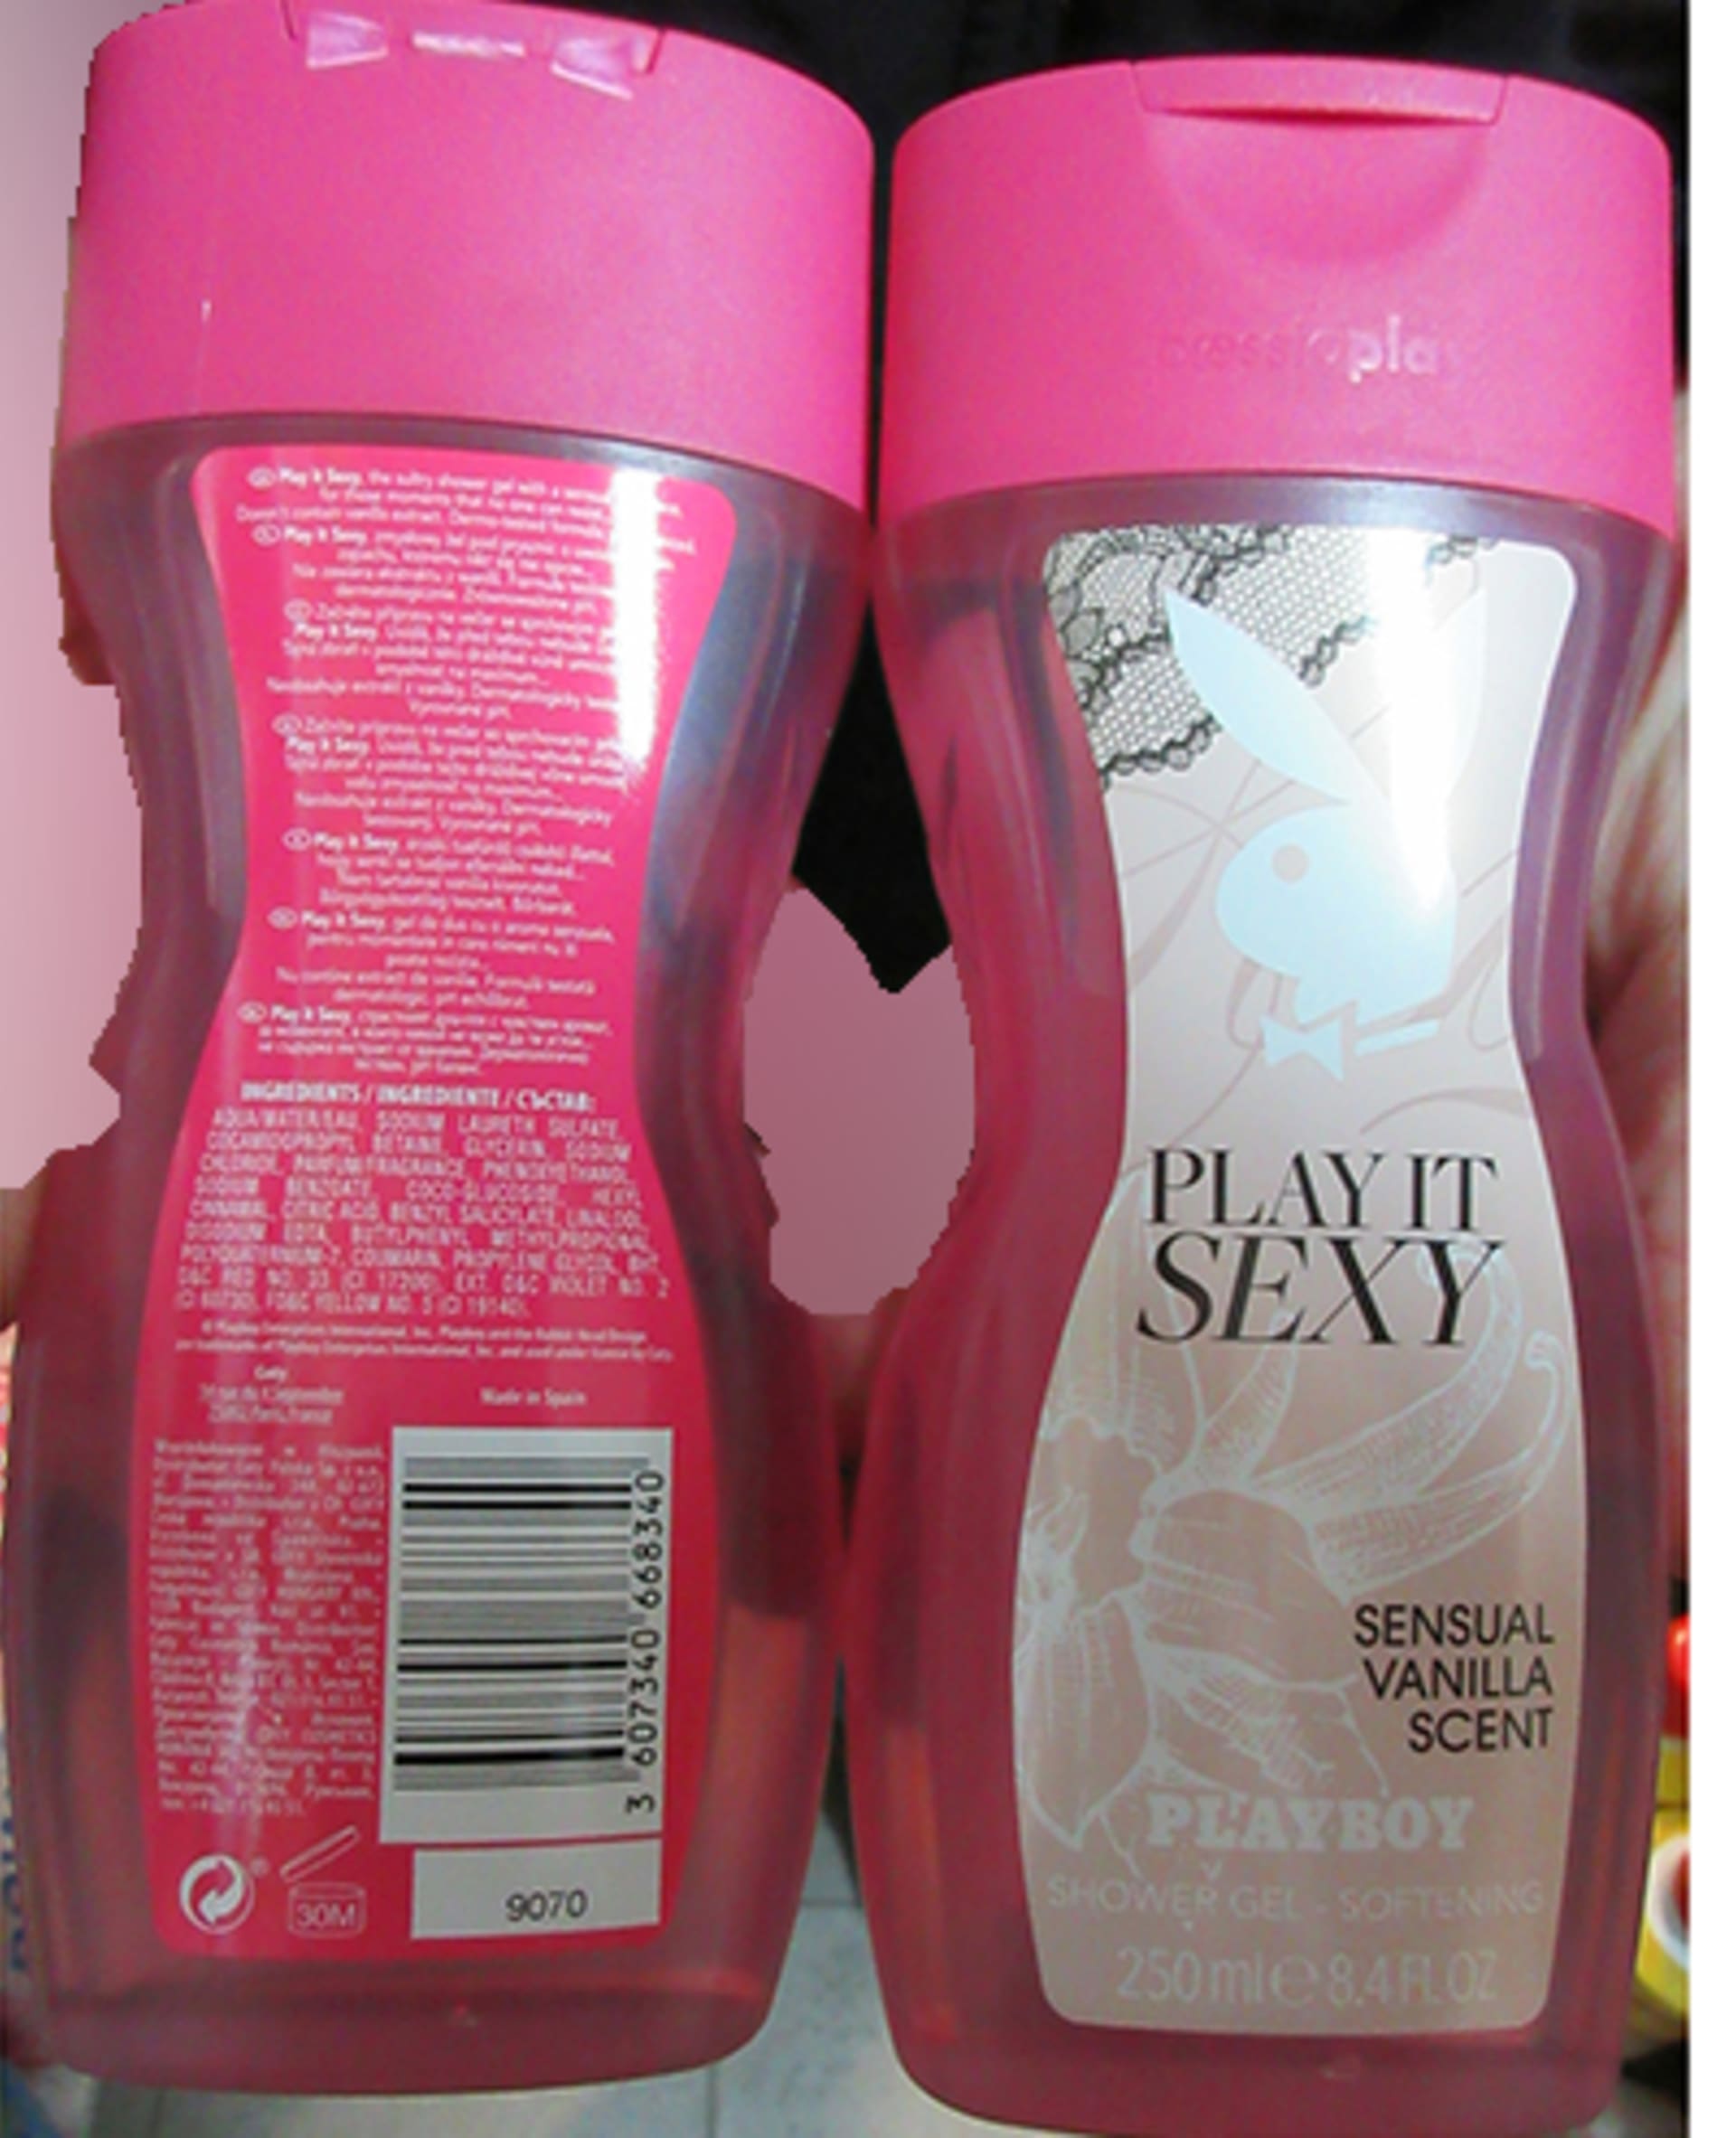 Látka je také ve sprchovém gelu Playboy Play It Sexy s čárovým kódem 3607340668340, který je původem ze Španělska.